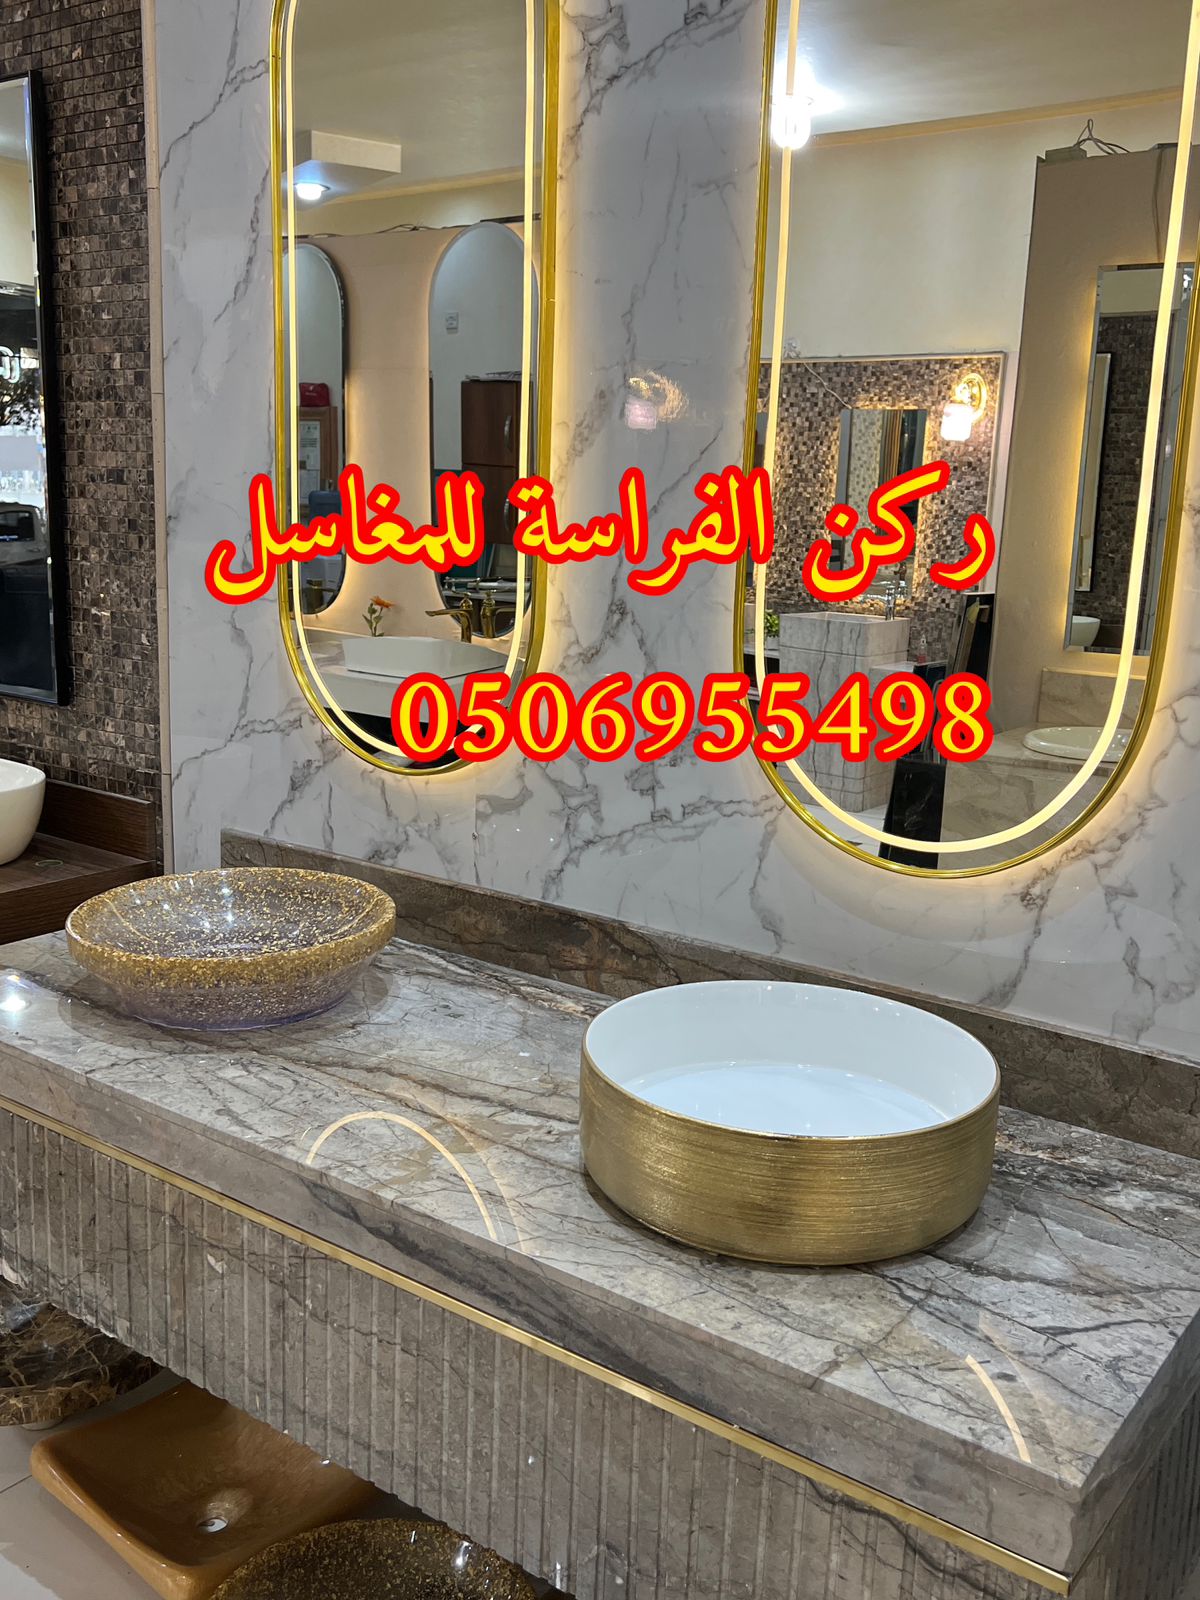 مغاسل رخام للمجالس في الرياض,0506955498